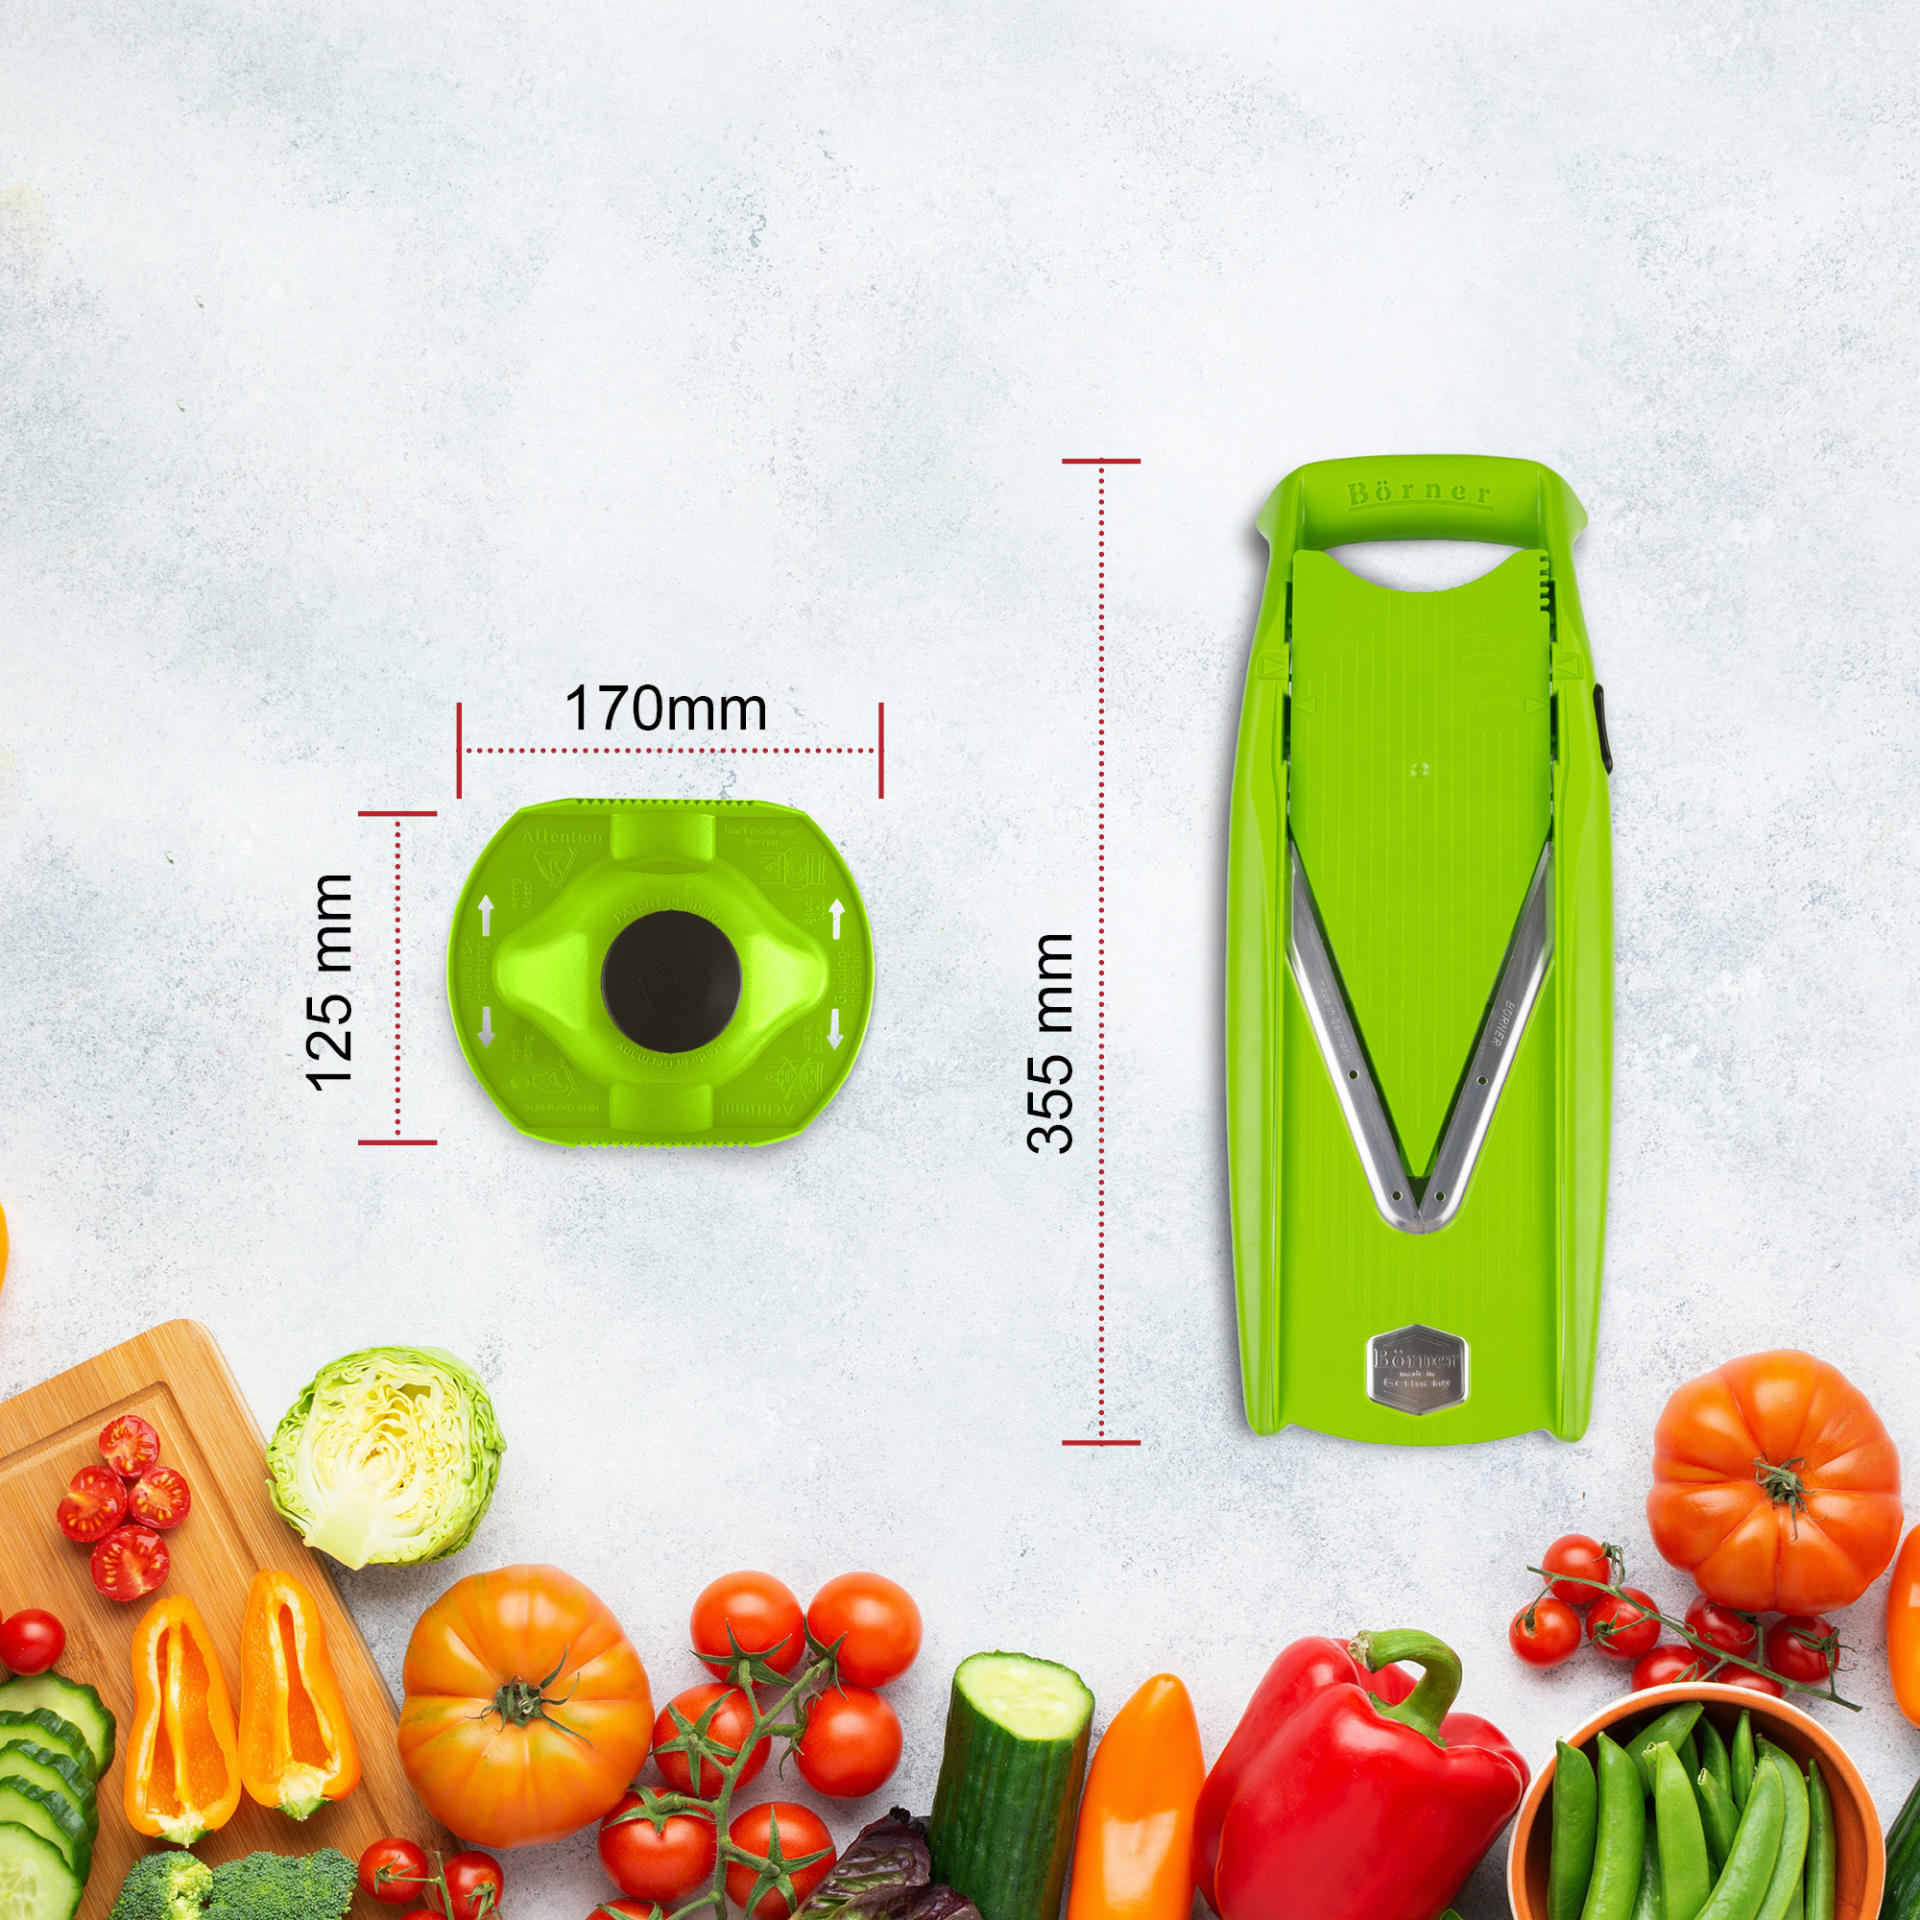 Кухненско ренде Бьорнер V5 PowerLine основен комплект - Зелен